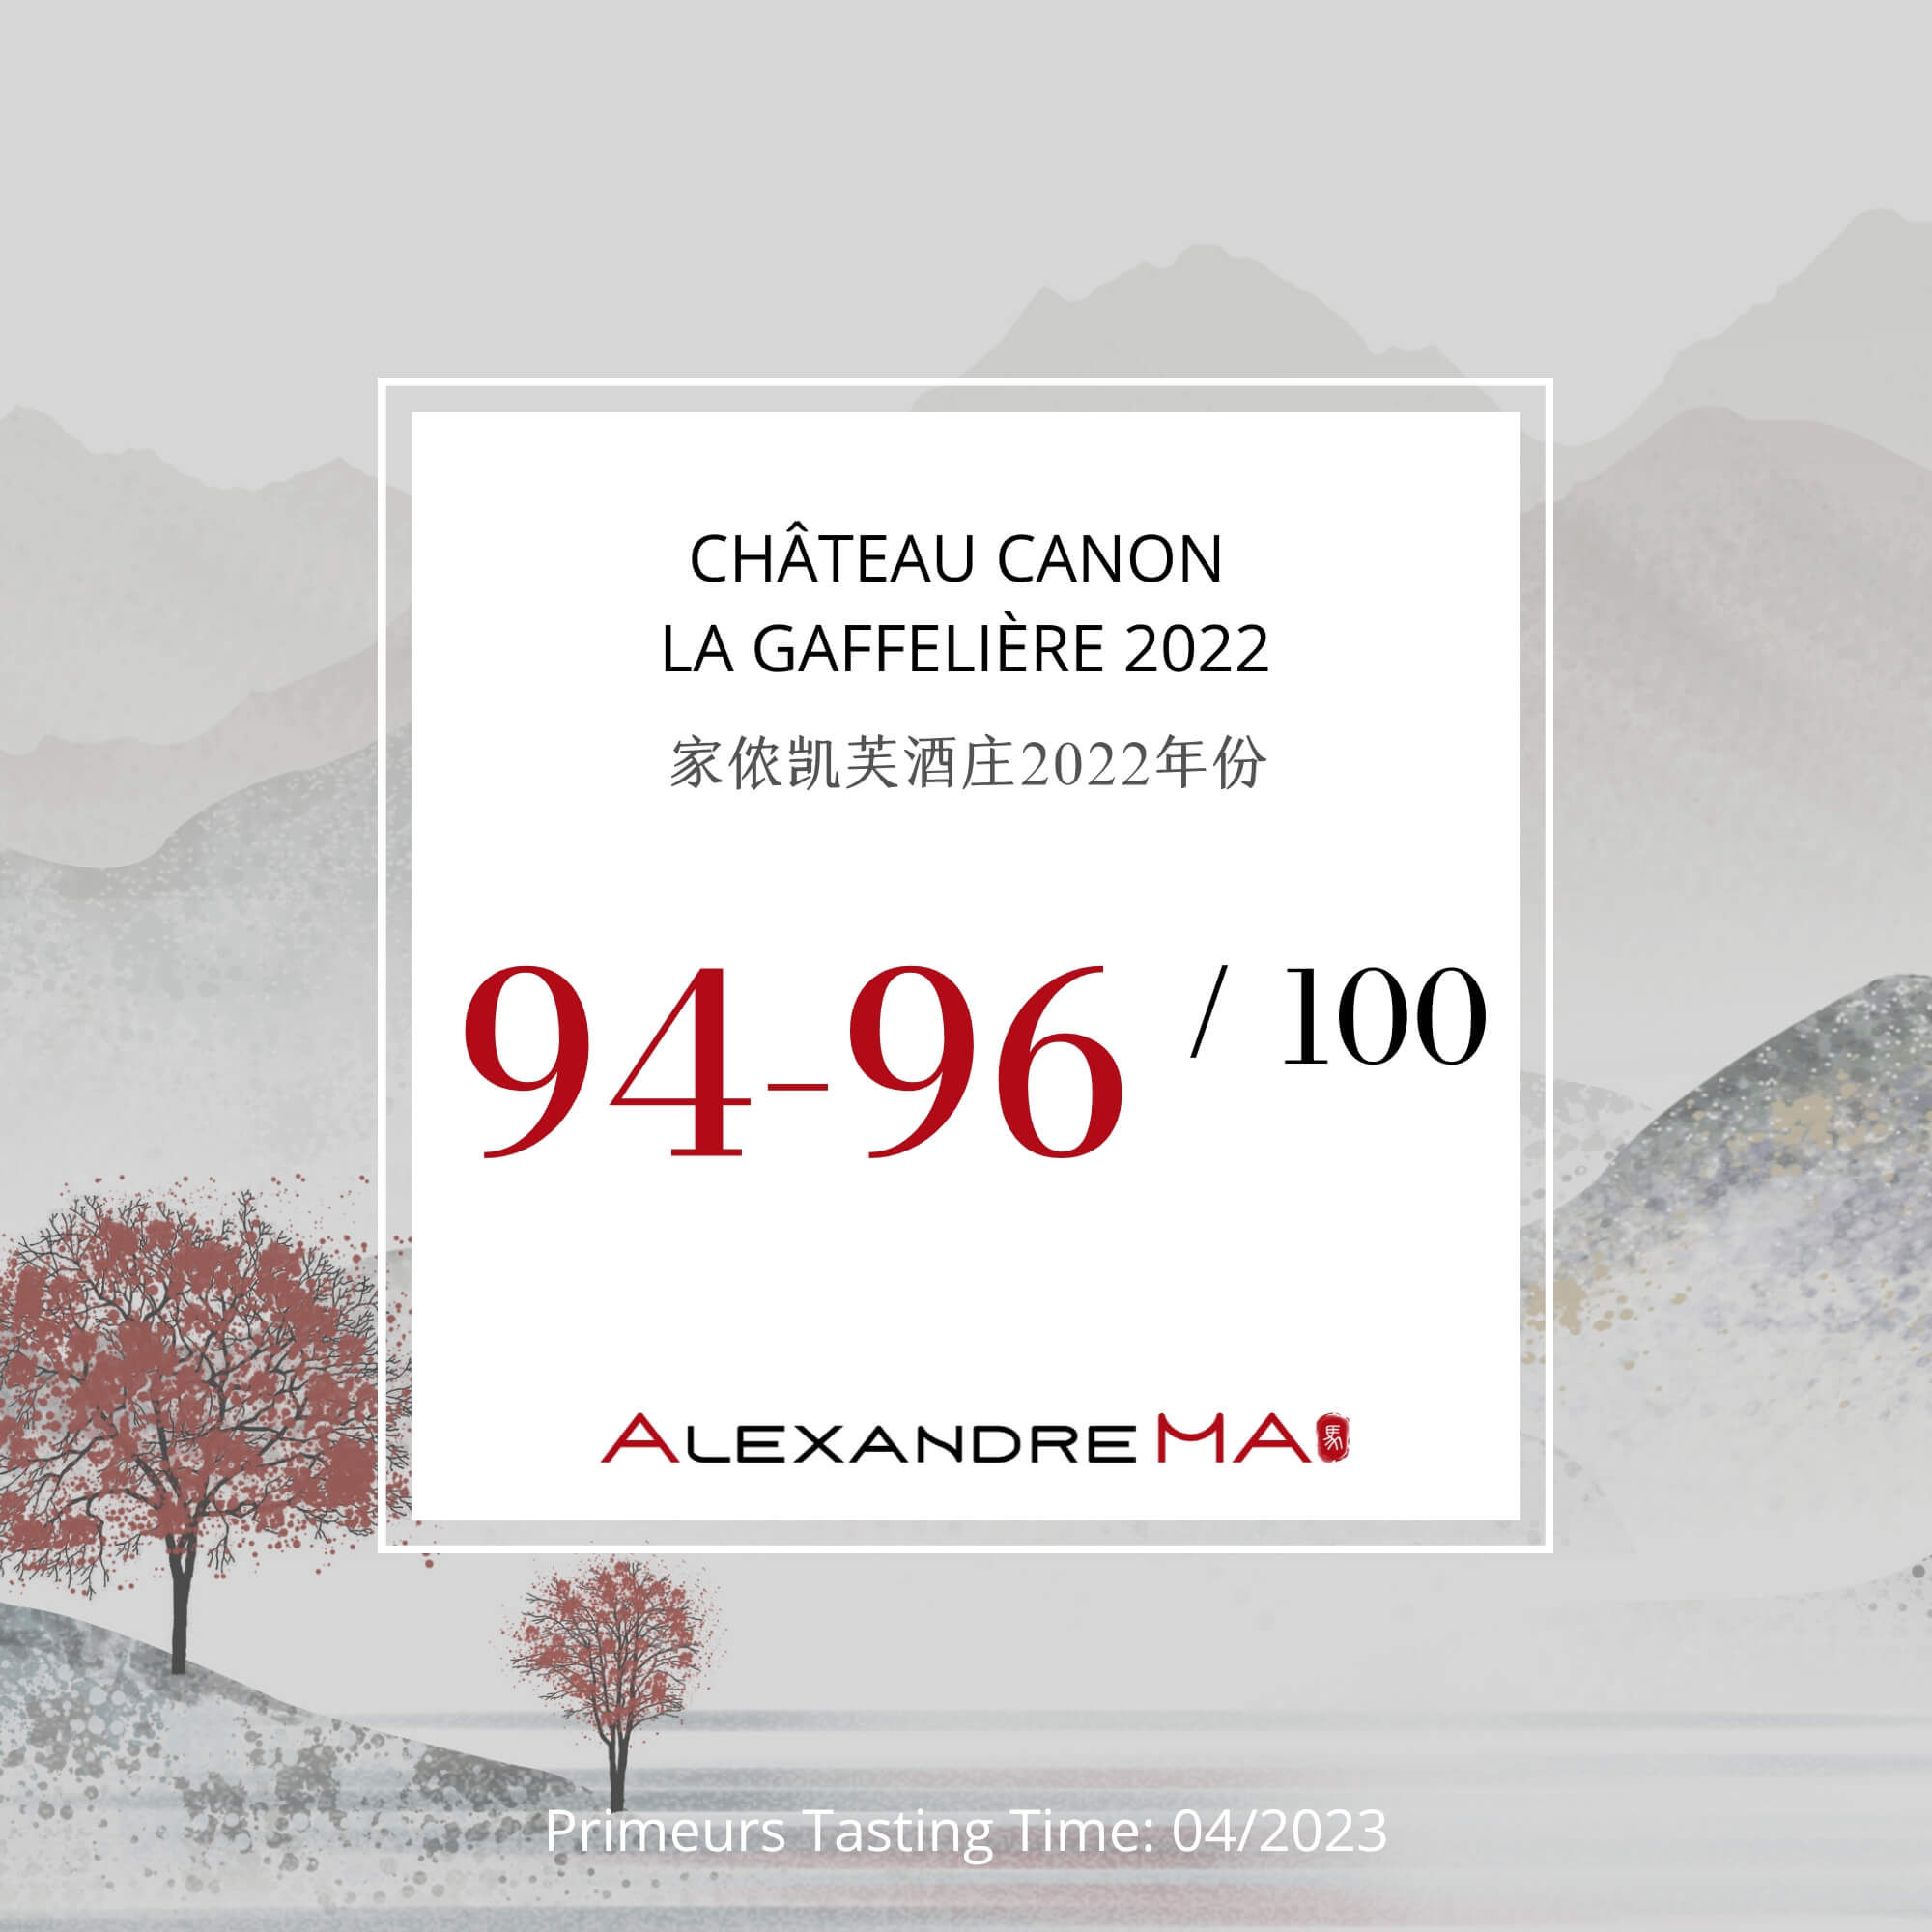 Château Canon La Gaffelière 2022 Primeurs - Alexandre MA